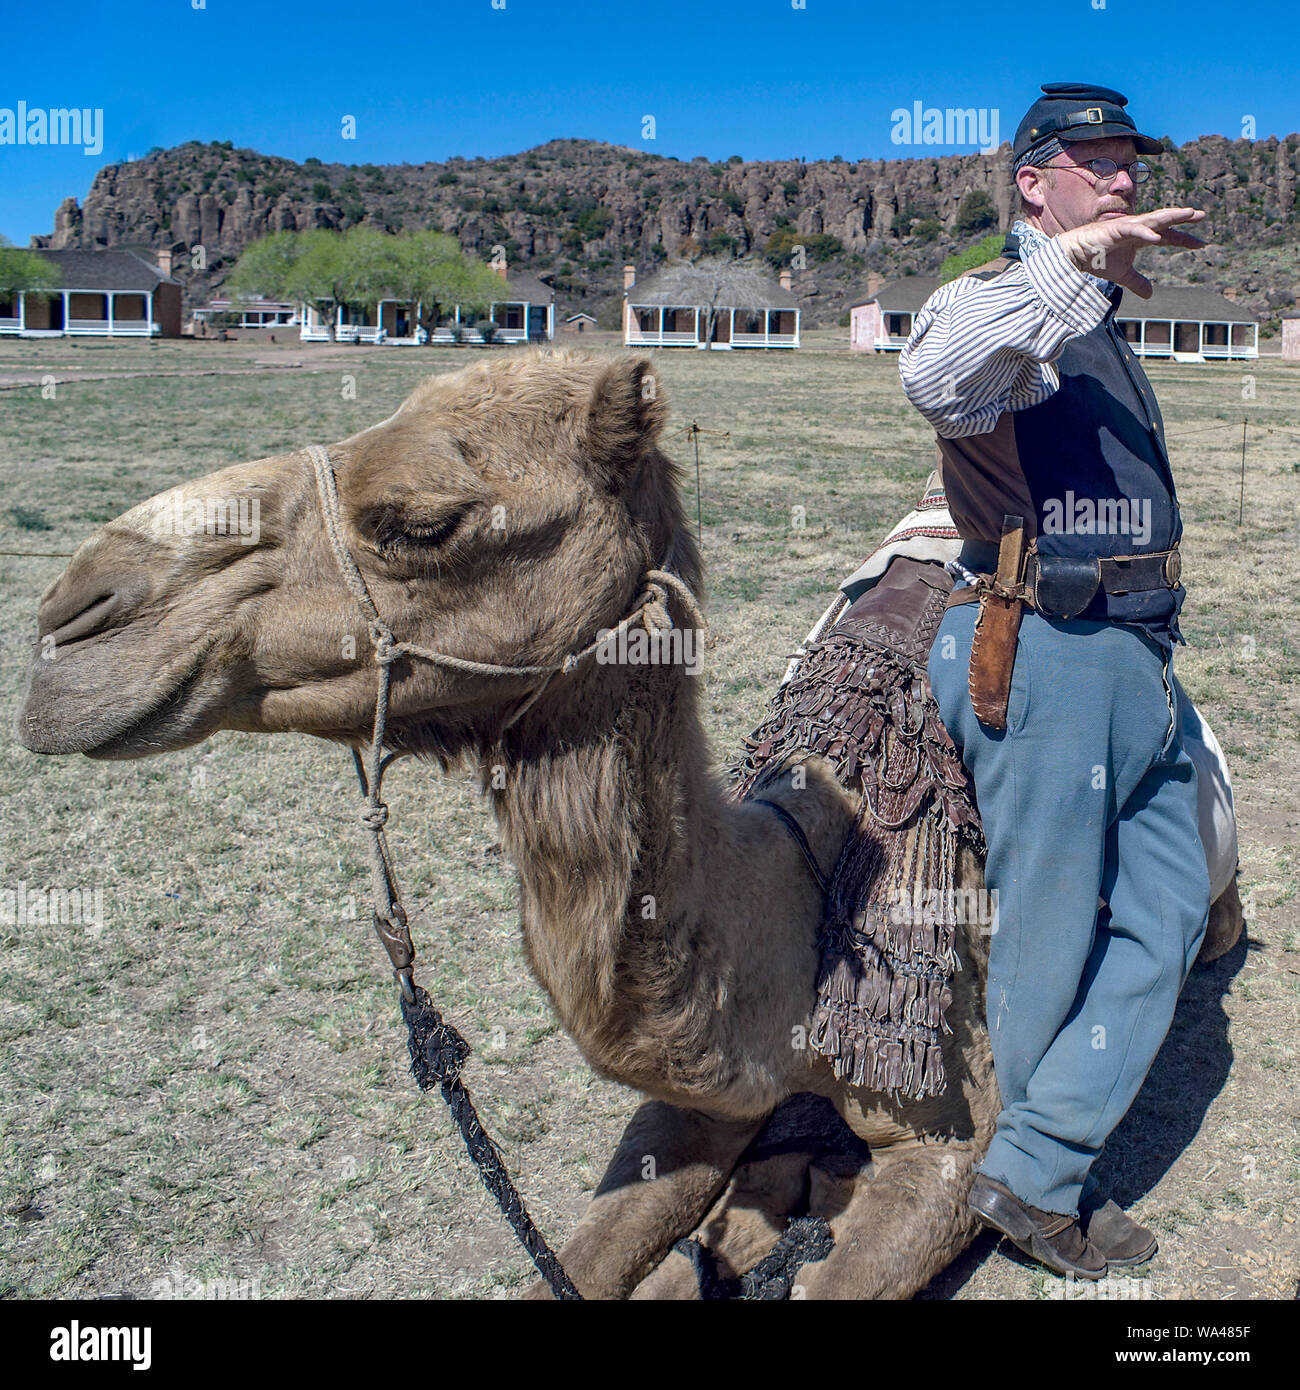 Stati Uniti Camel Corps reenactor in Fort Davis, Texas. Era un palazzo del XIX secolo esperimento dell'esercito degli Stati Uniti utilizzando i cammelli come animali da soma. Foto Stock